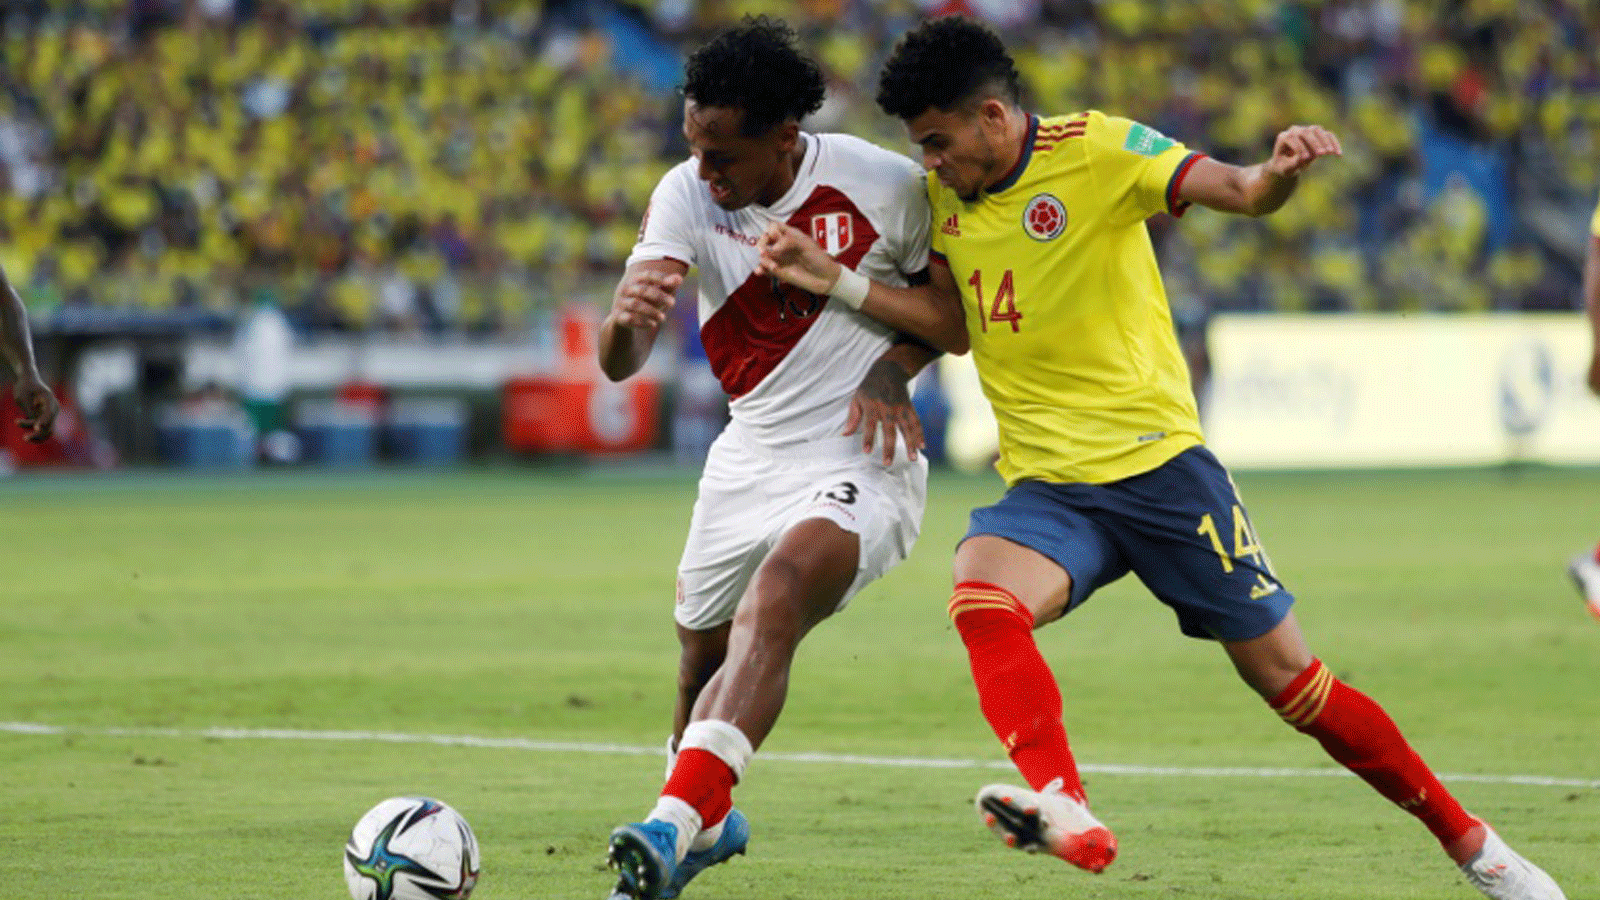 الكولومبي لويس دياس (يمين) خلال مباراة بلاده مع البيرو في تصفيات أميركا الجنوبية المؤهلة لمونديال 2022، بارانكويا، كولومبيا في 28 كانون الثاني/يناير 2022